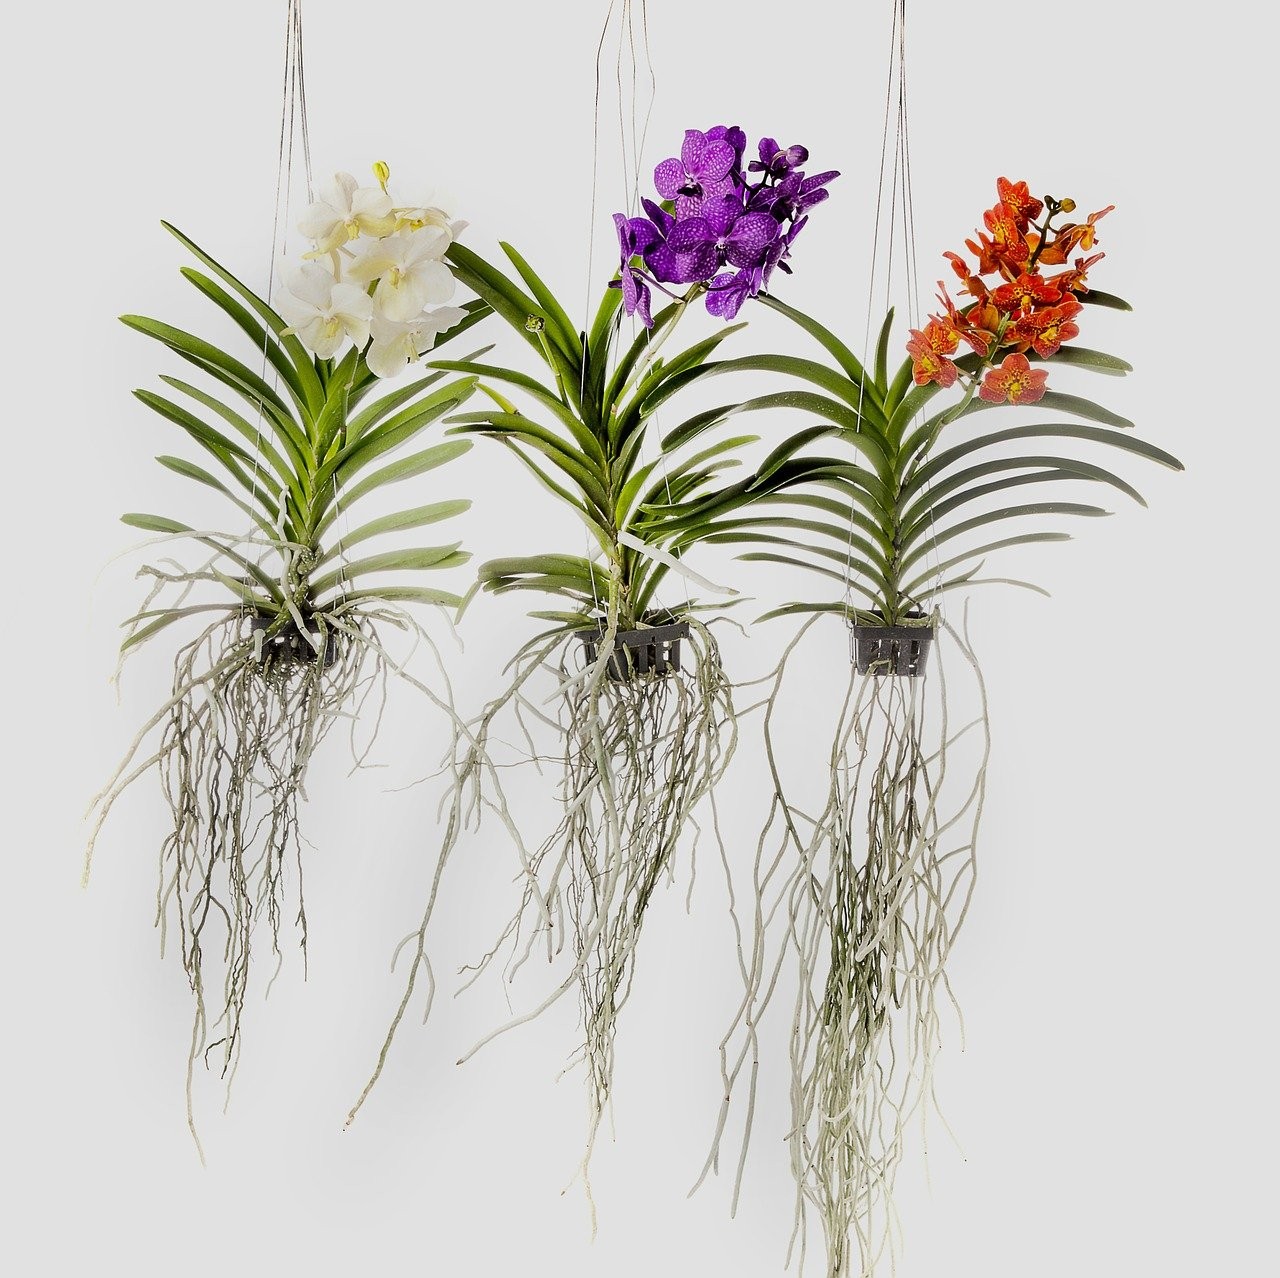 A Orquídea Vanda é um dos ornamentos mais queridos dos designers de interiores por sua delicadeza. (Foto: Pixabay/RainerBerns/CreativeCommons)